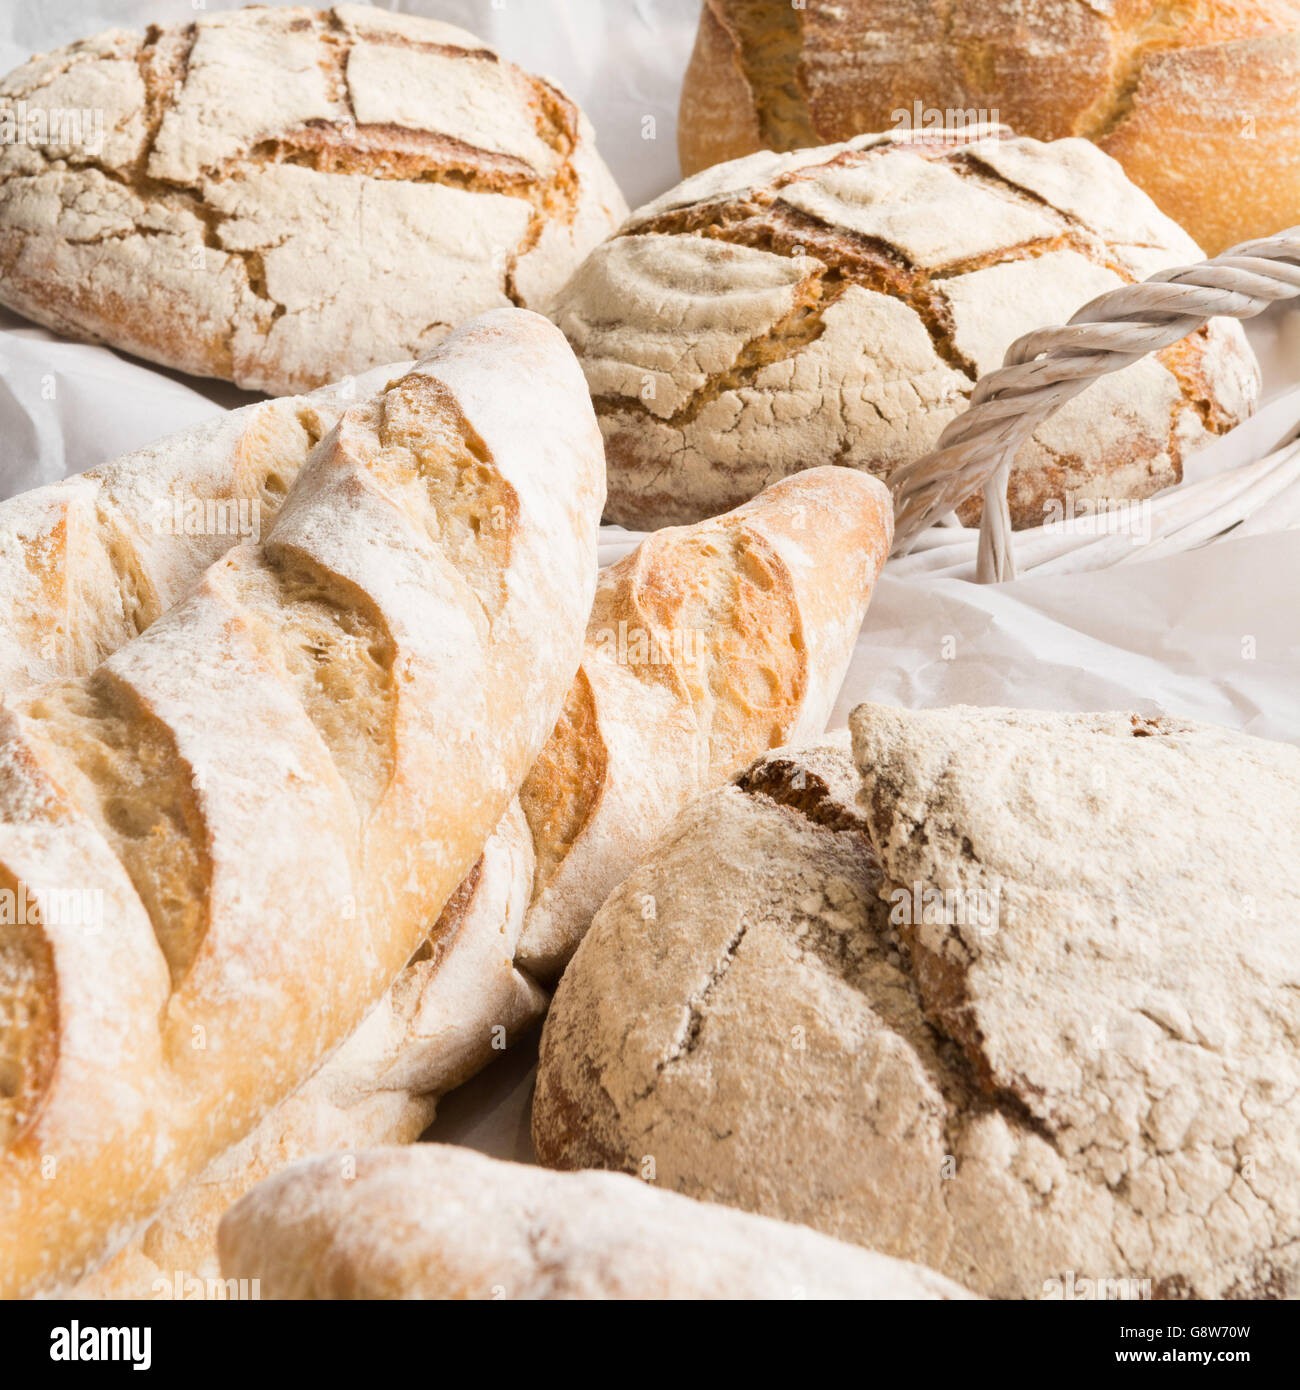 frisch gebackene Handwerker Brote in weißen geflochtenen Korb - Nahaufnahme Stockfoto